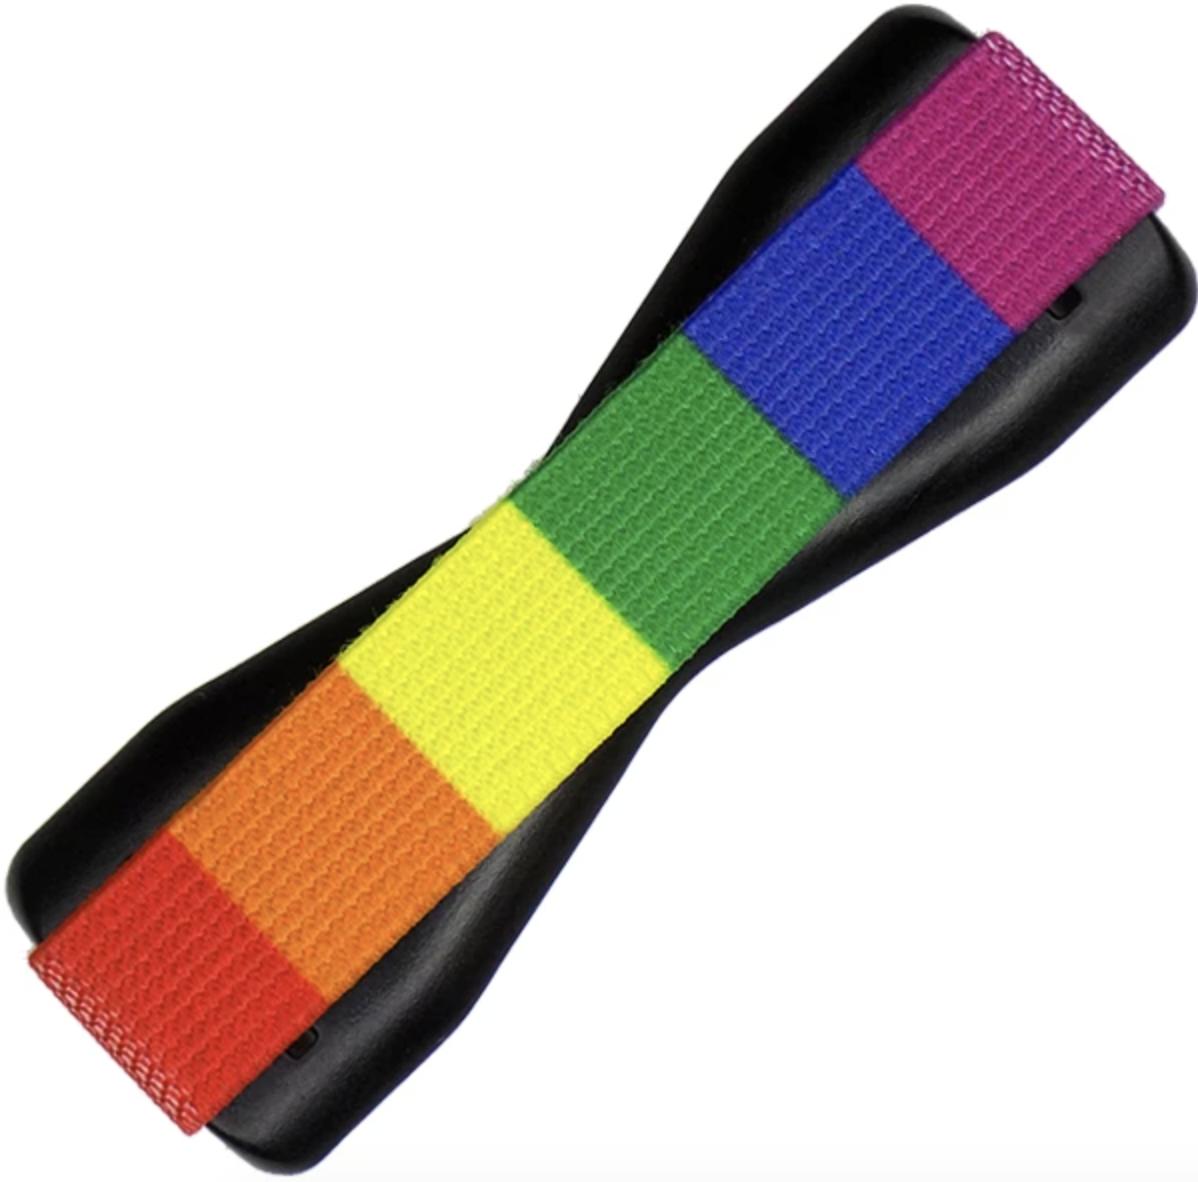 Lovehandle Rainbow Phone Grip Render Cropped